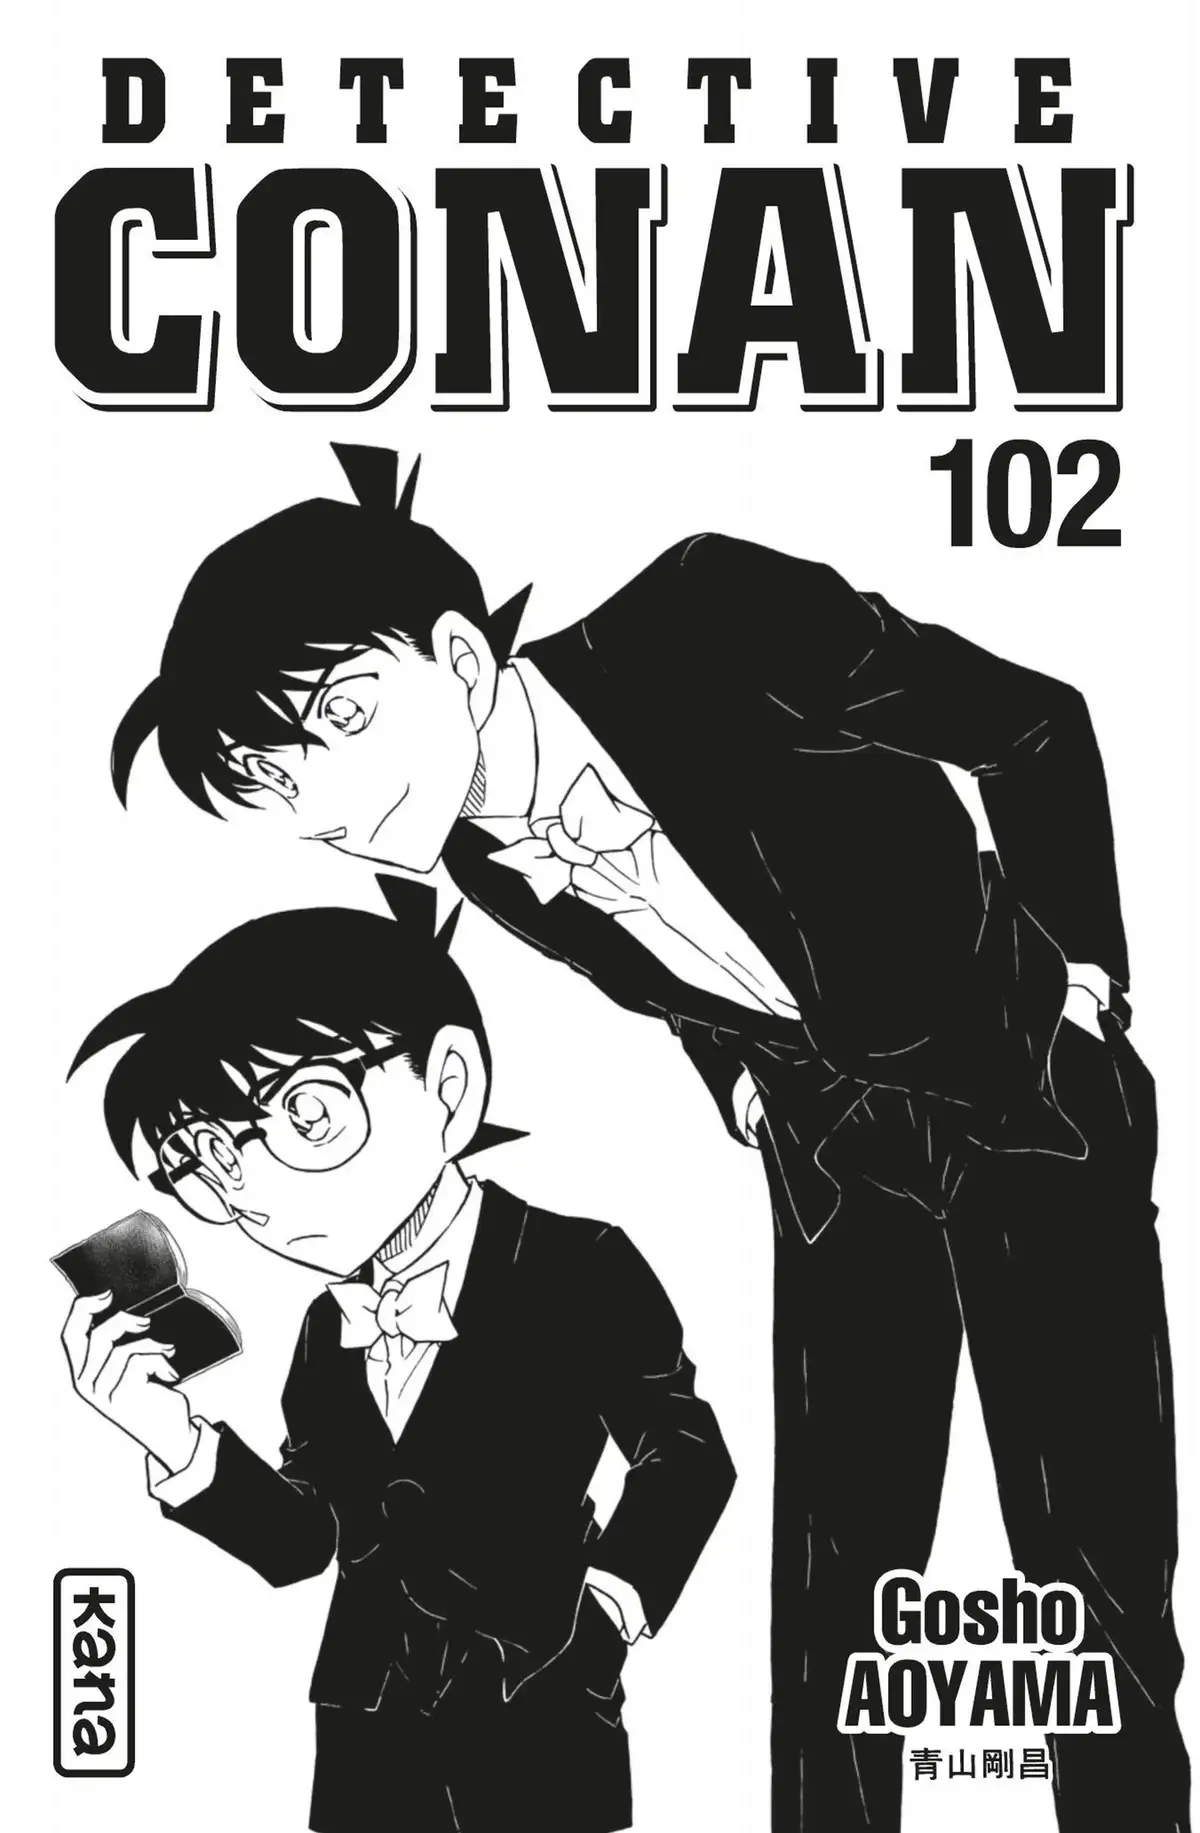 Détective Conan Volume 102 page 2